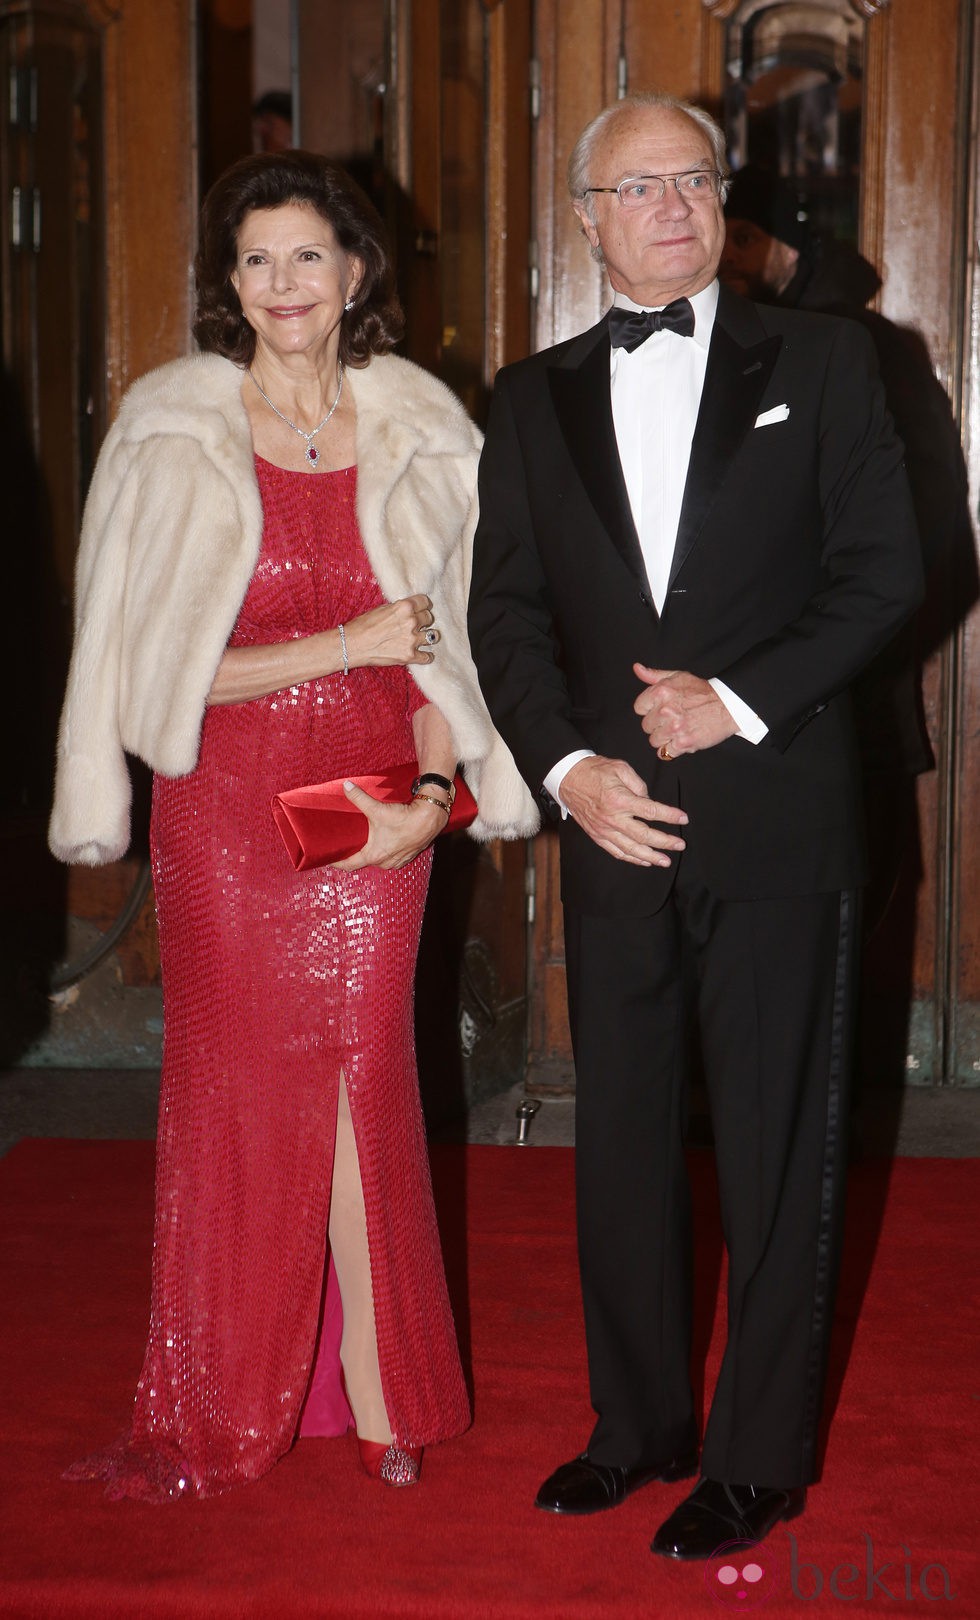 Reina Silvia y el rey Carlos XVI Gustavo de Suecia en el homenaje celebrado con motivo del 70º cumpleaños de la monarca